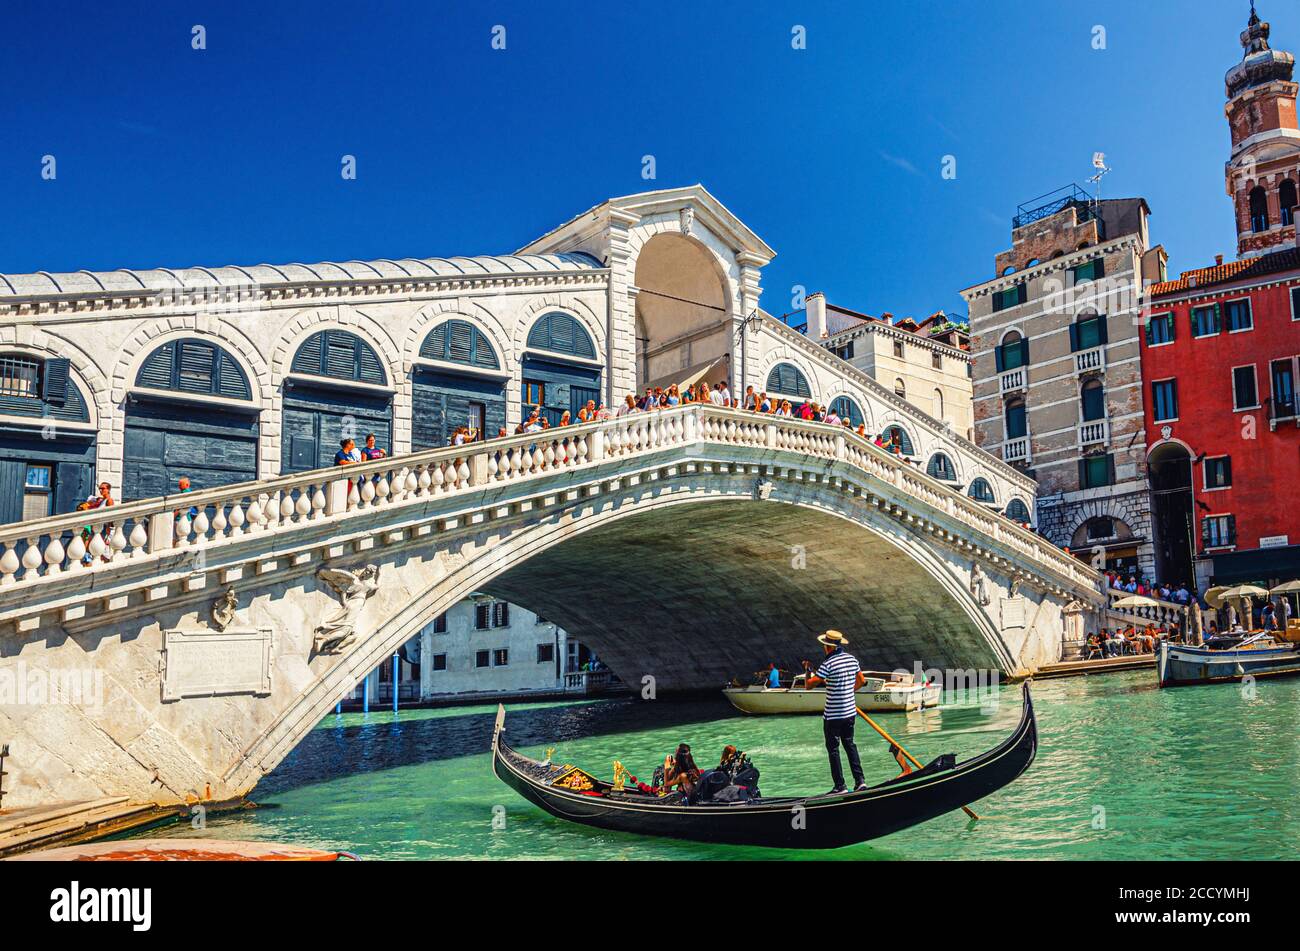 Venezia, Italia, 13 settembre 2019: Gondoliere in gondola tradizionale barca a vela sulle acque del Canal Grande sotto il Ponte di Rialto, tipici edifici colorati e cielo blu chiaro sfondo Foto Stock